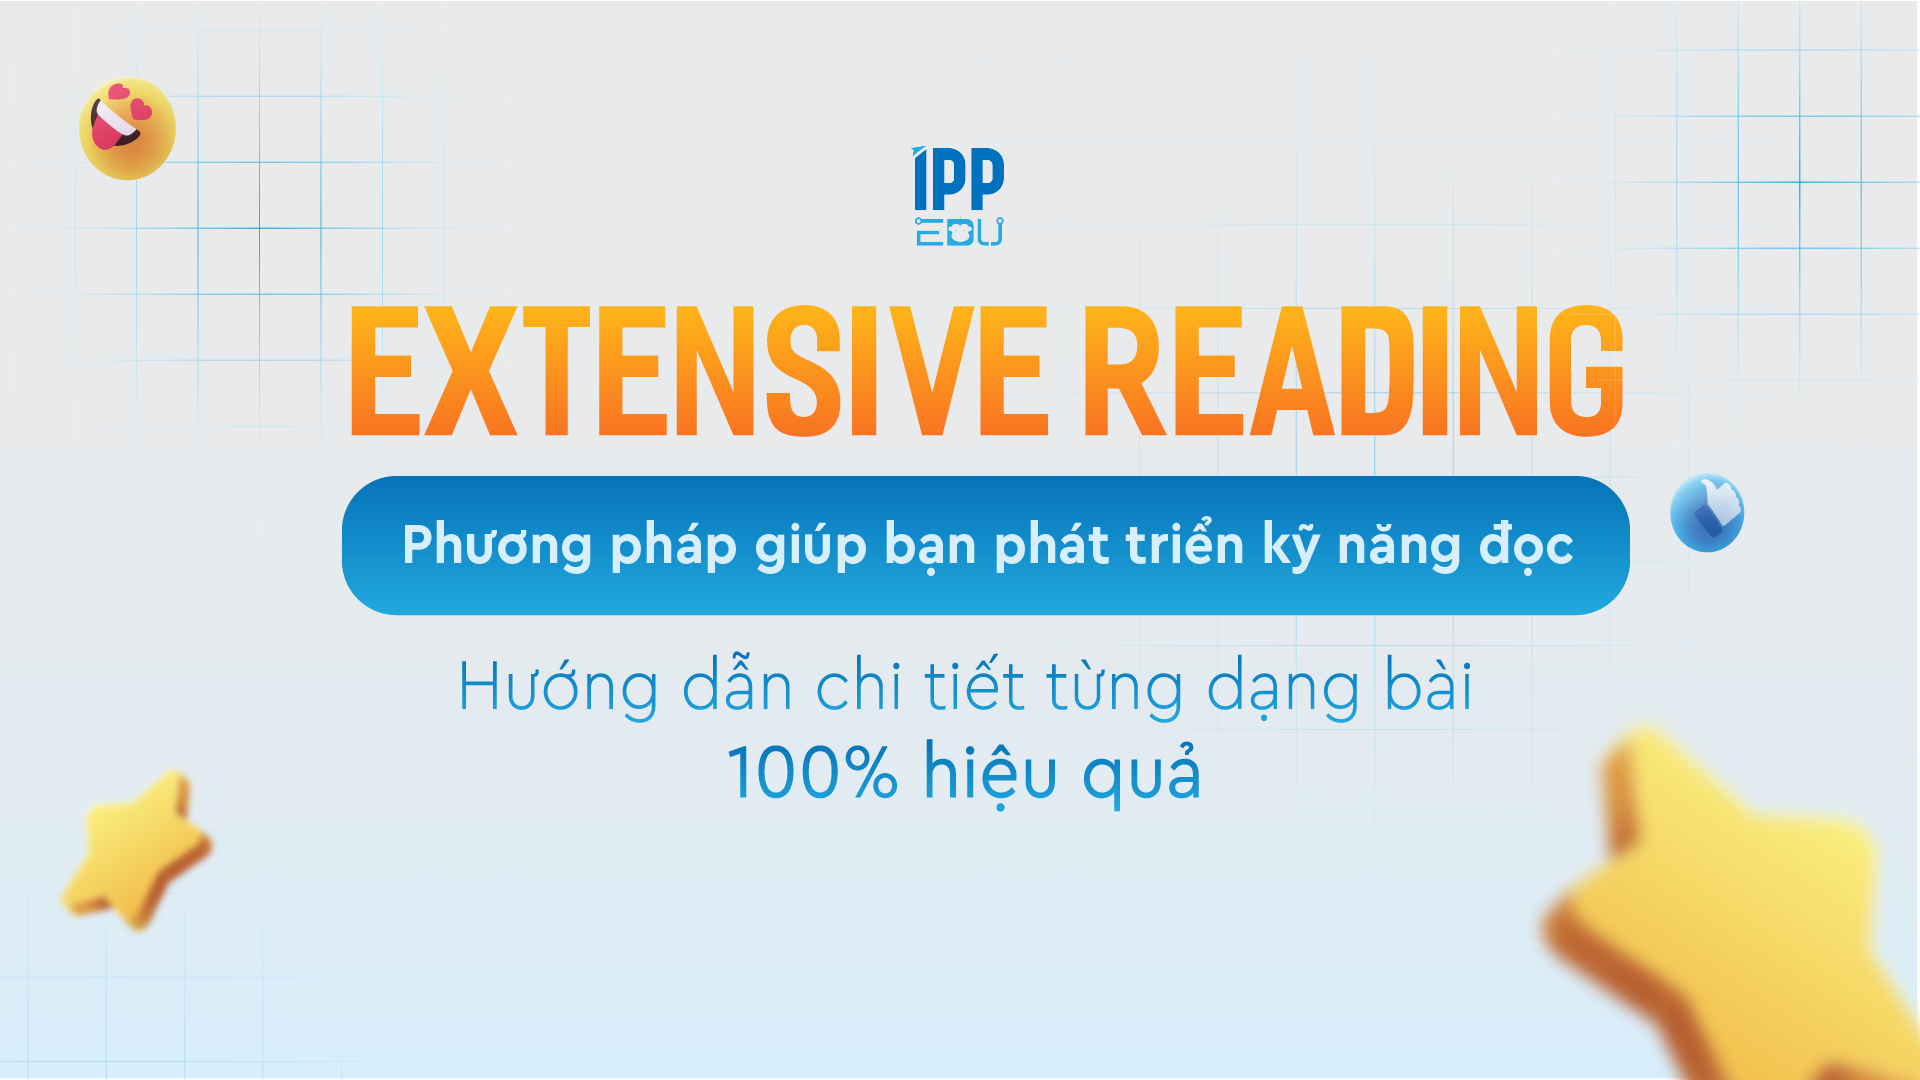 Phát triển kỹ năng đọc với Extensive Reading